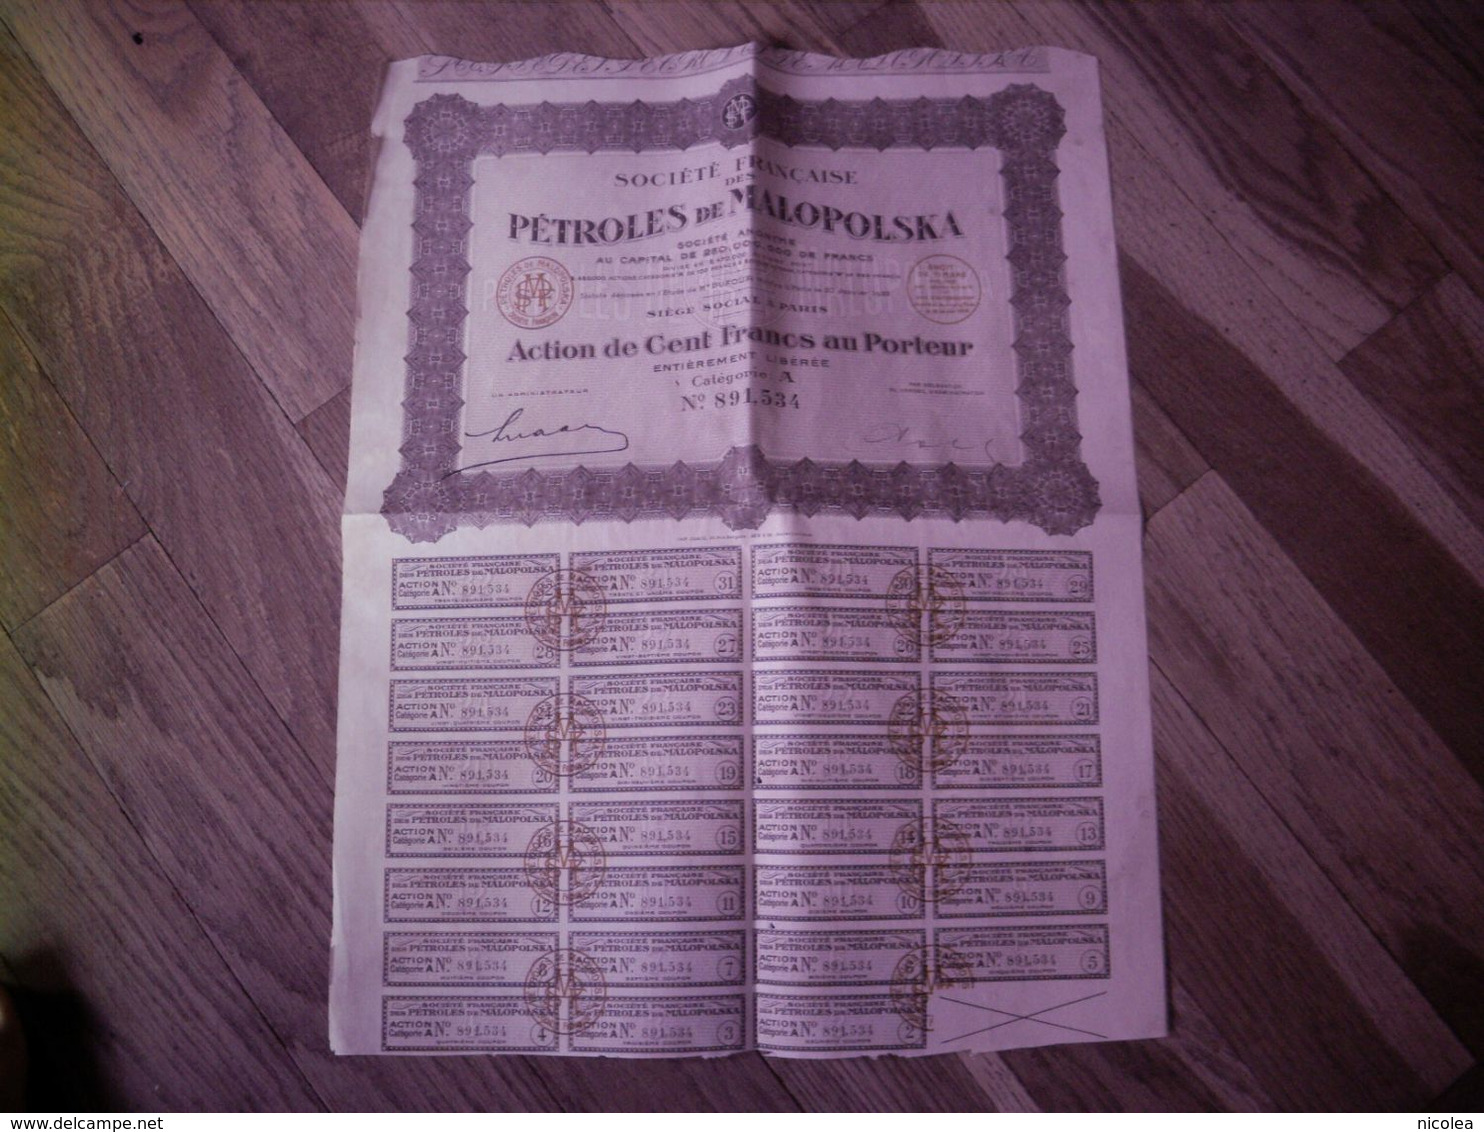 Société Française Des Pétroles De Malopolska - 1922 - Action De Cent Francs Au Porteur Entièrement Libérée - Pétrole